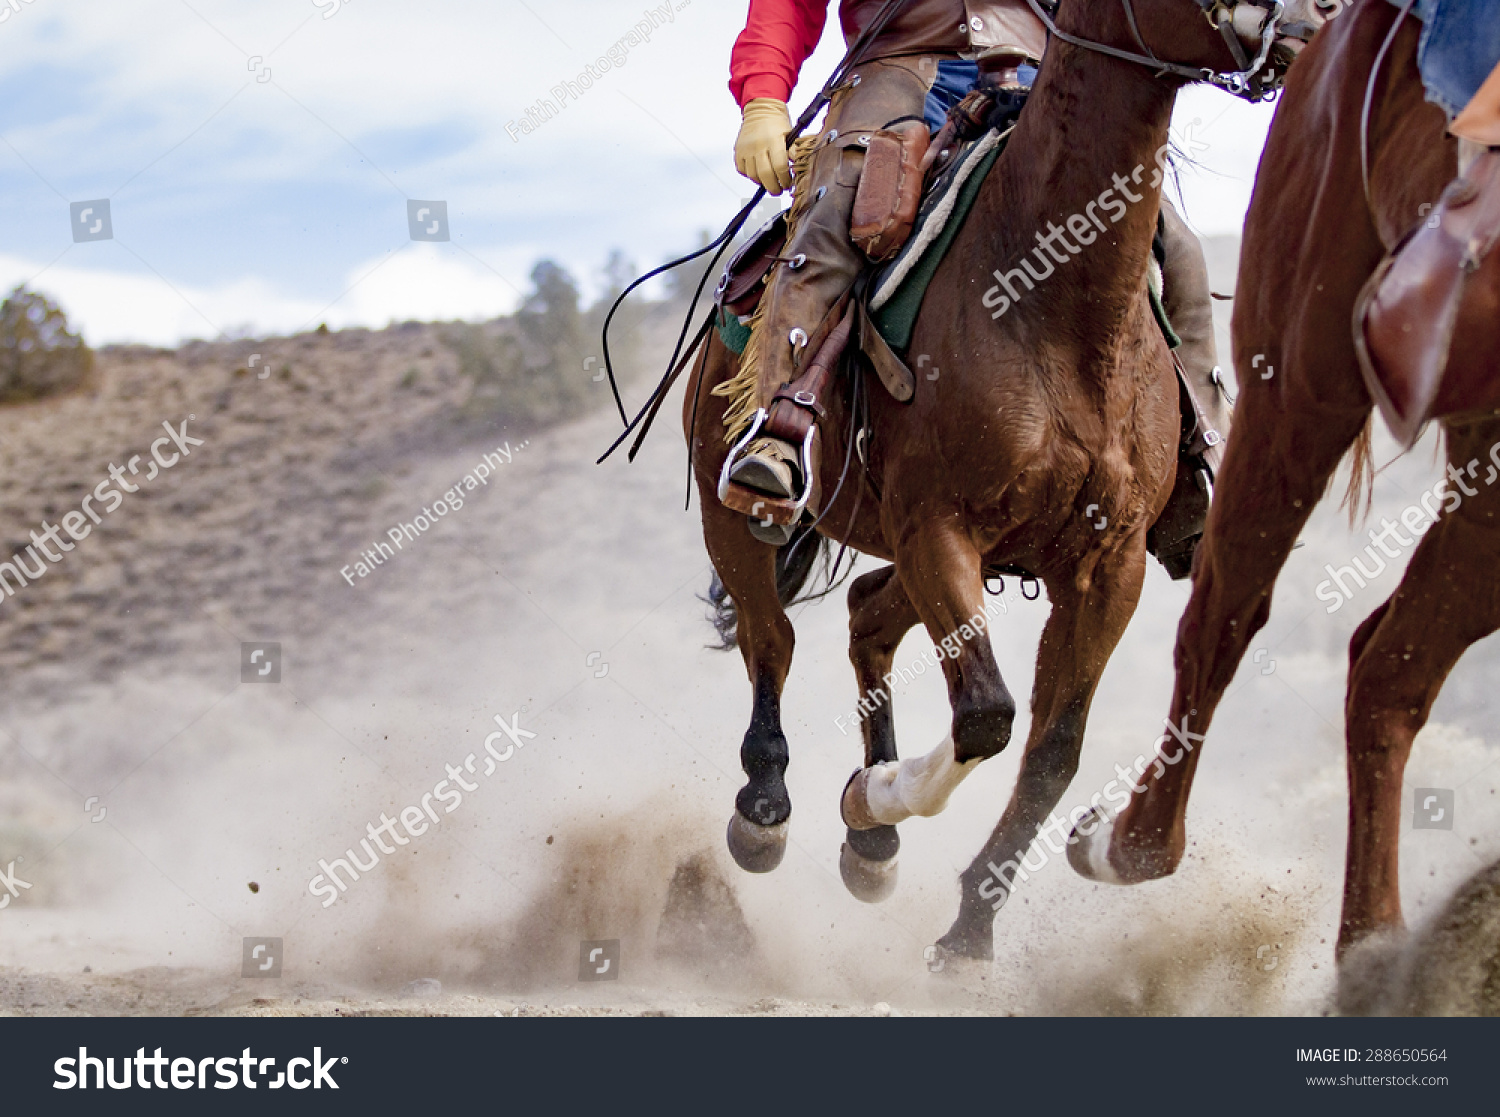 Horses Cowboy Riding Hard Close Viewpoint Stock Photo 28